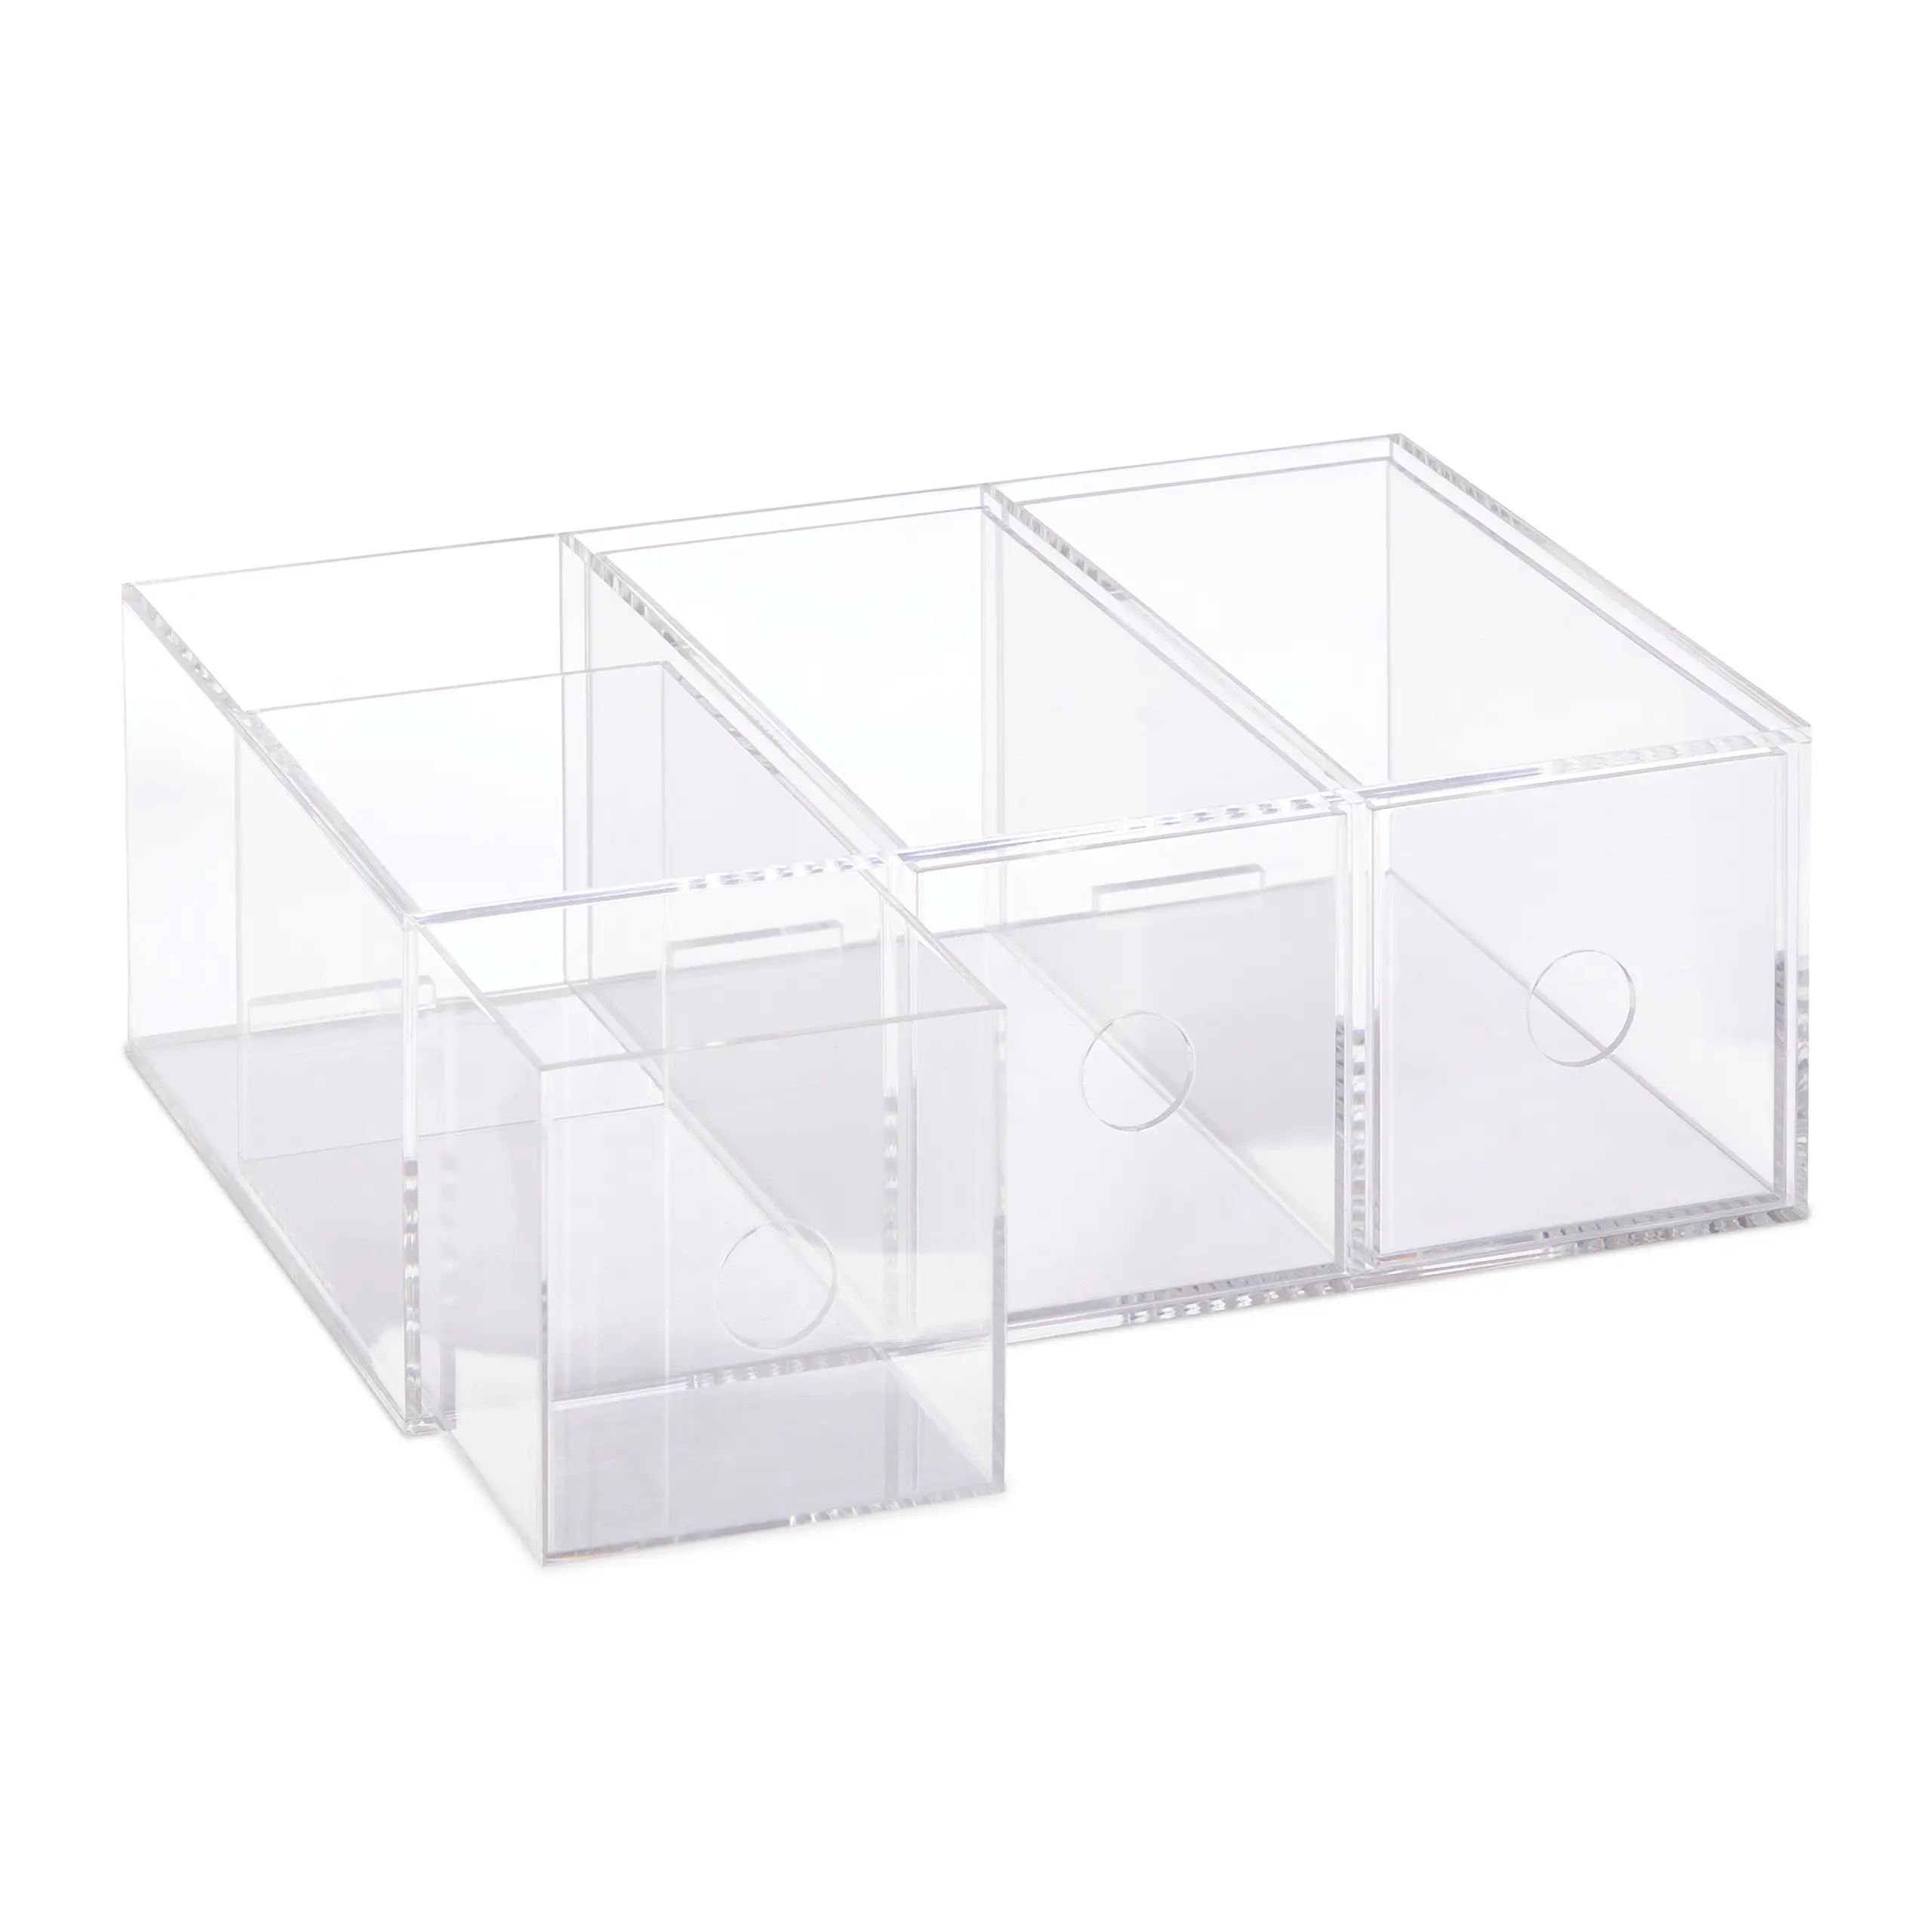 Transparente Teebox mit 3 Schubladen | Vorratsdosen